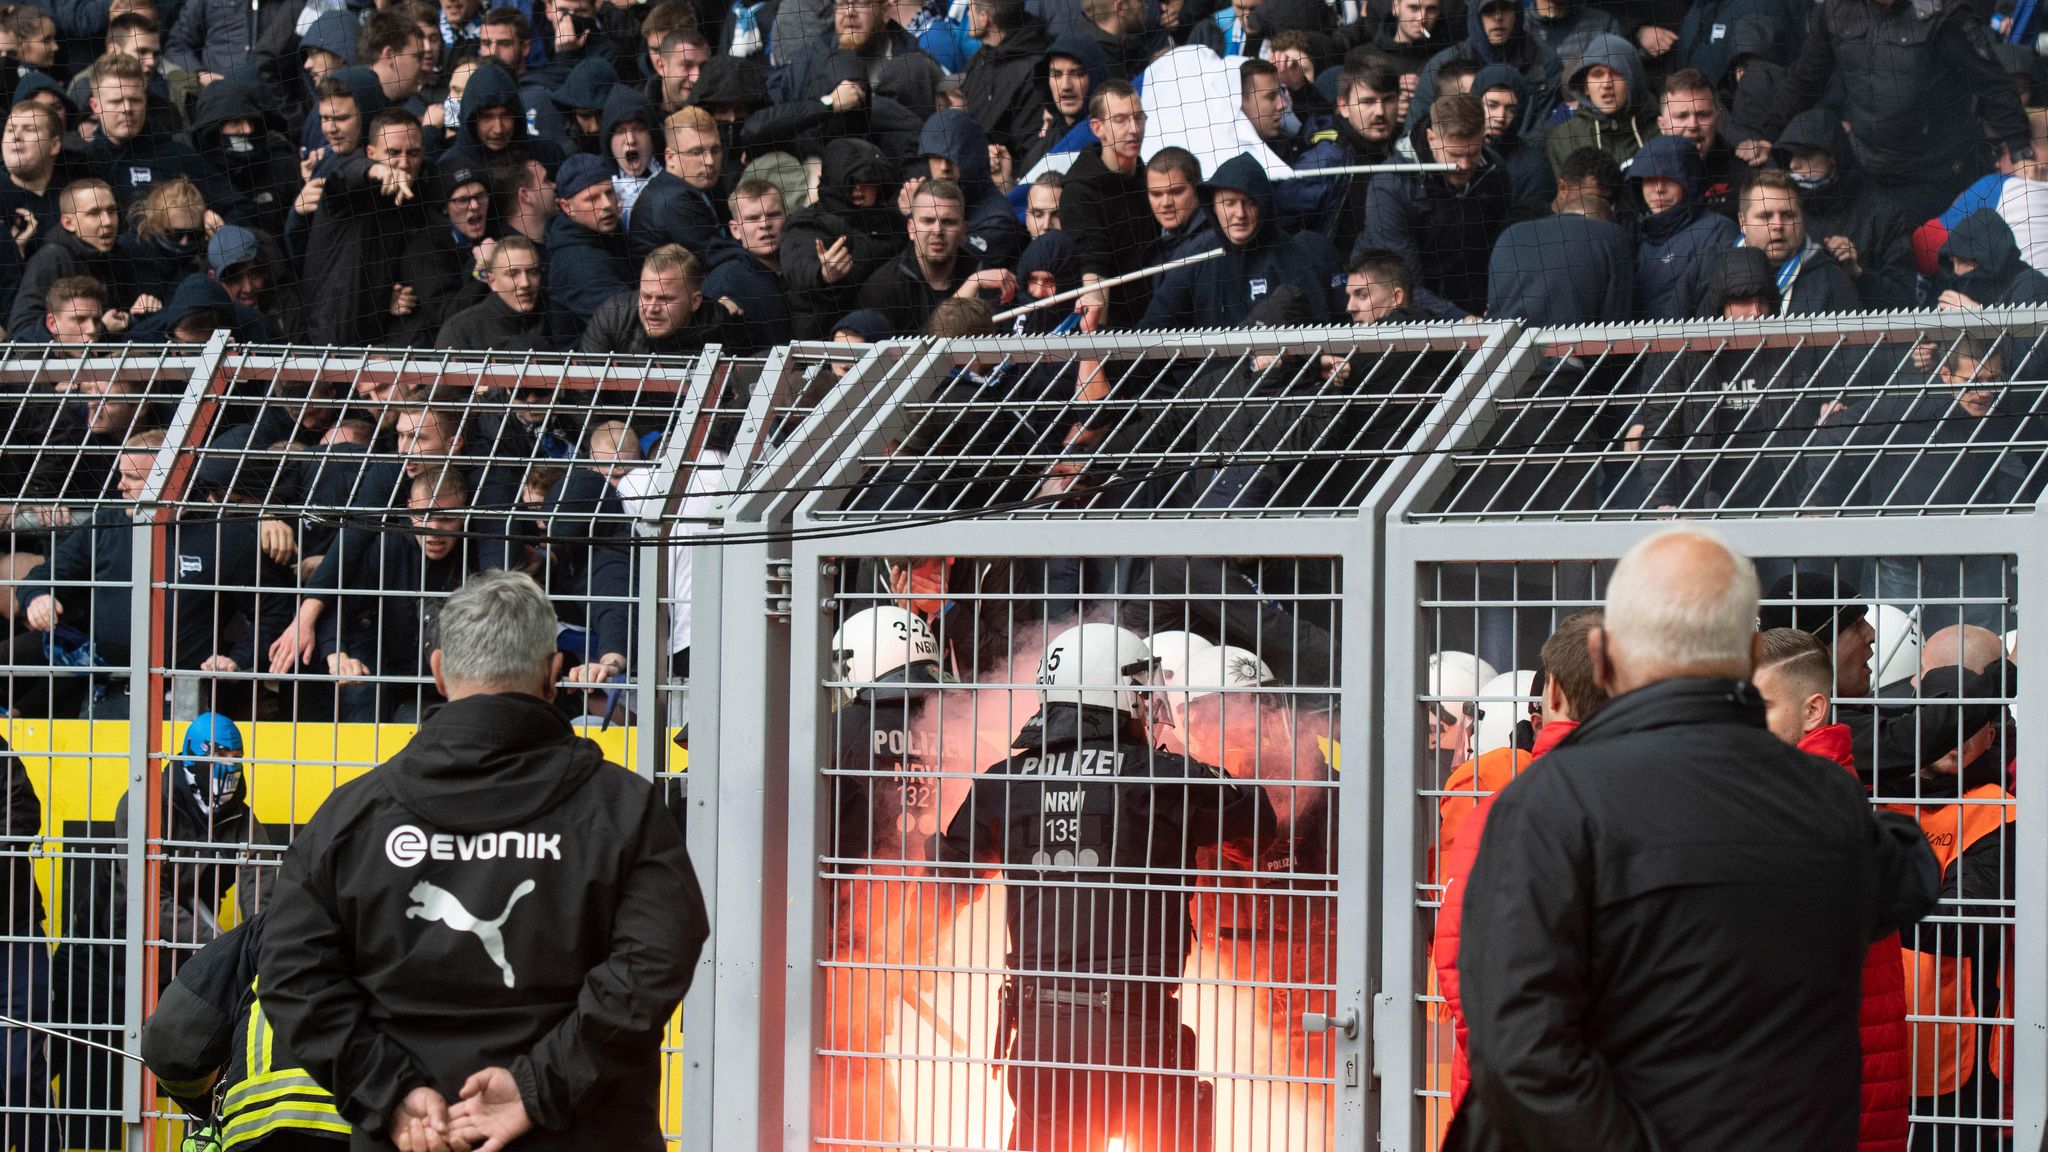 BVB-Spiel 100 Hertha-Ultras attackieren Dortmunder Polizei mit Stangen STERN.de